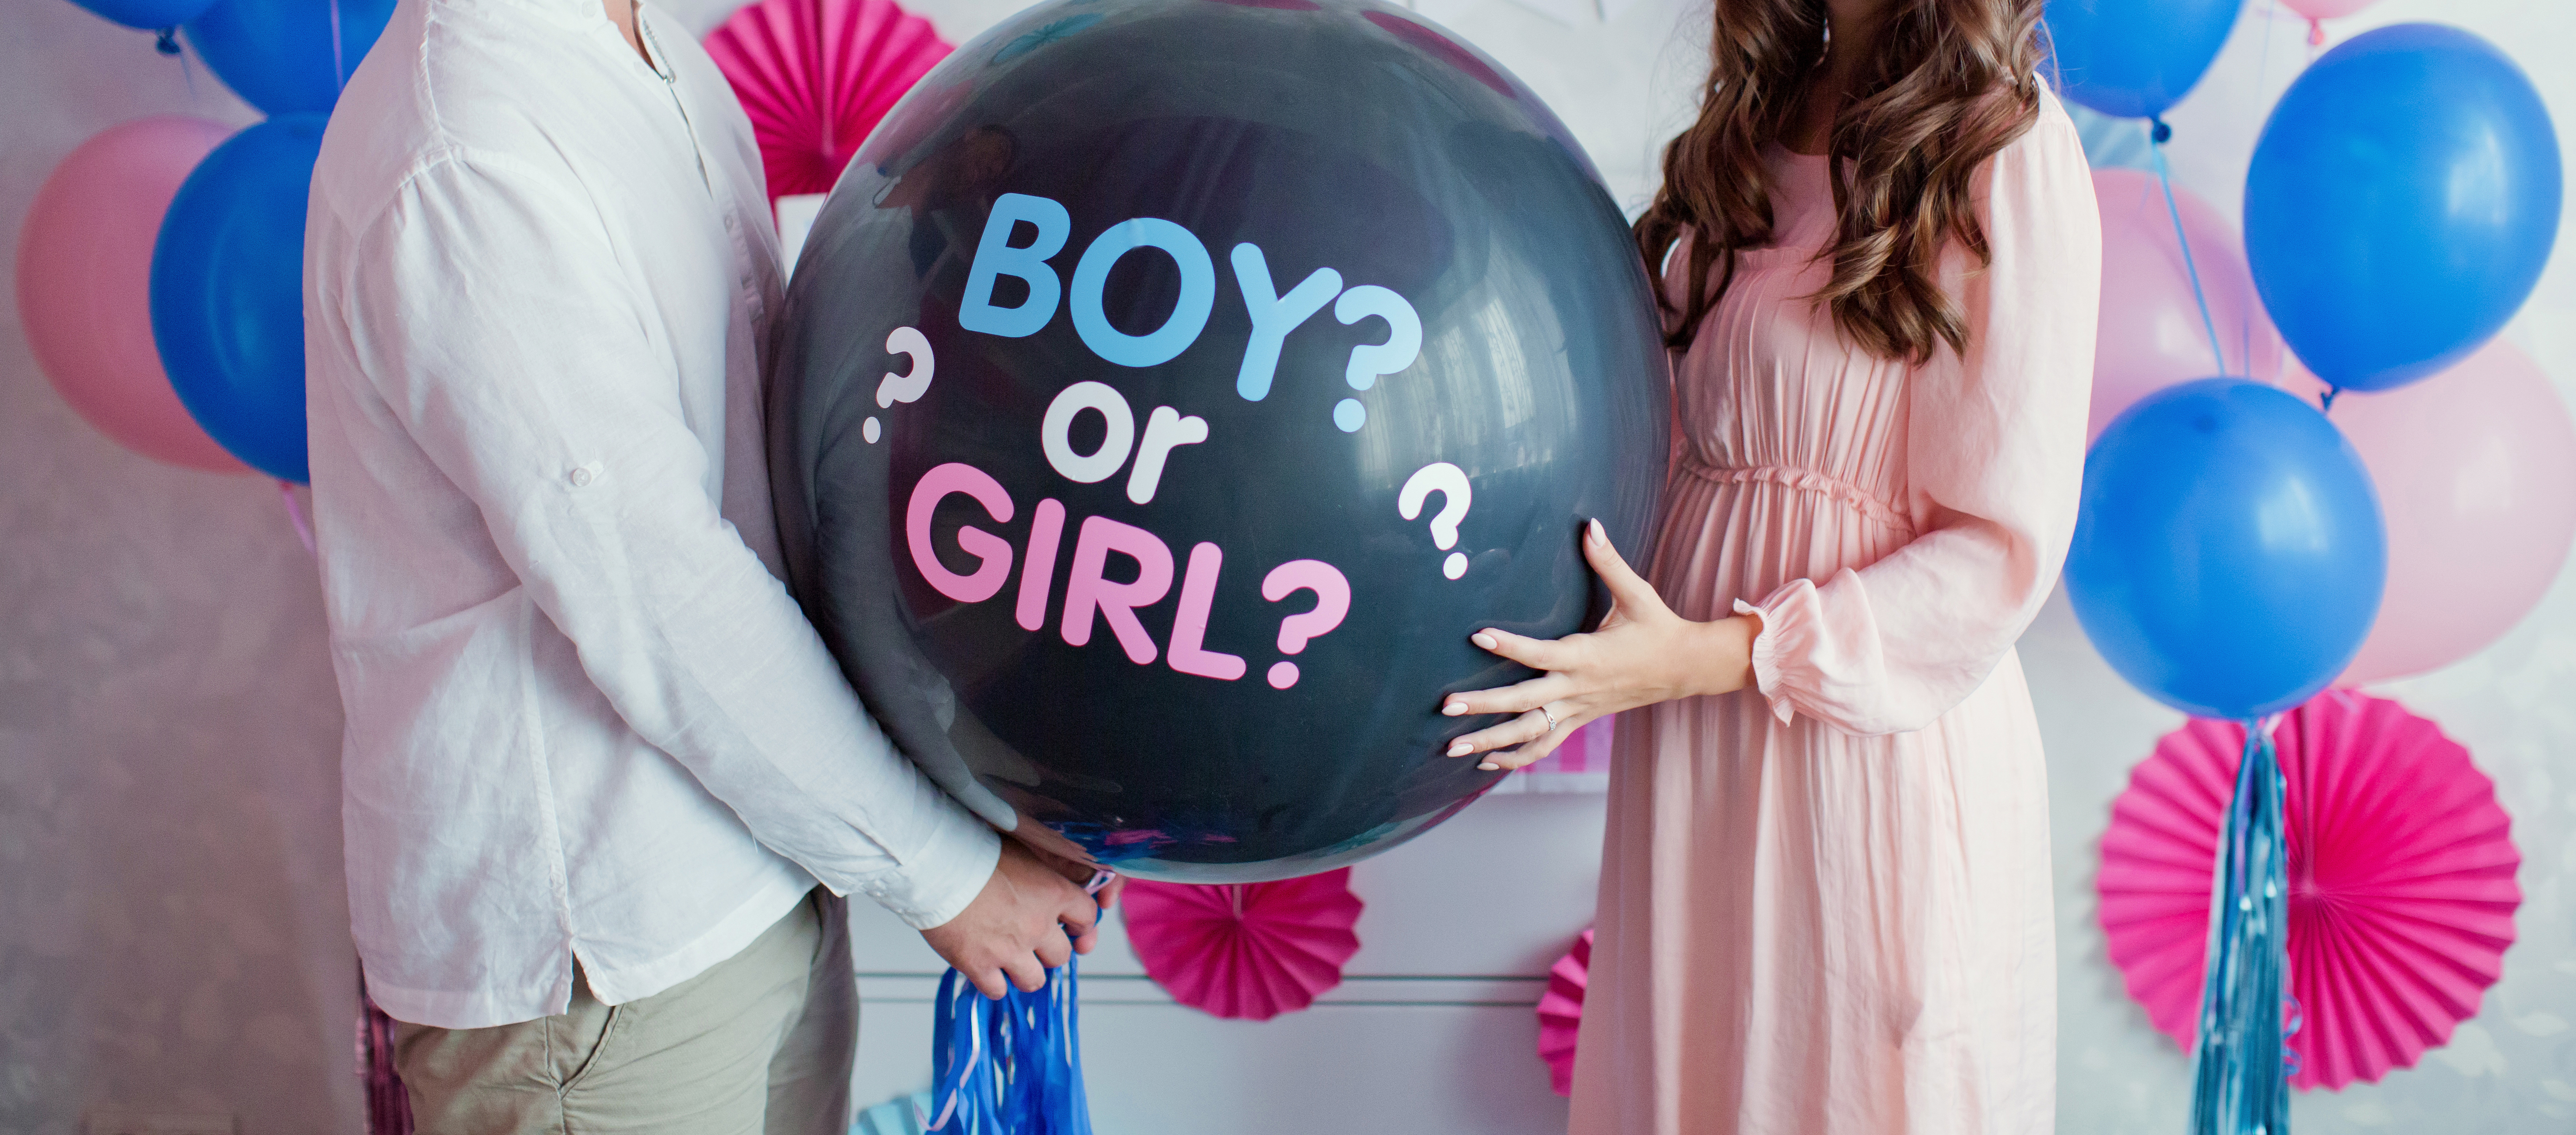 Ein Paar, das einen Luftballon mit der Aufschrift "Junge oder Mädchen" hält | Quelle: Shutterstock